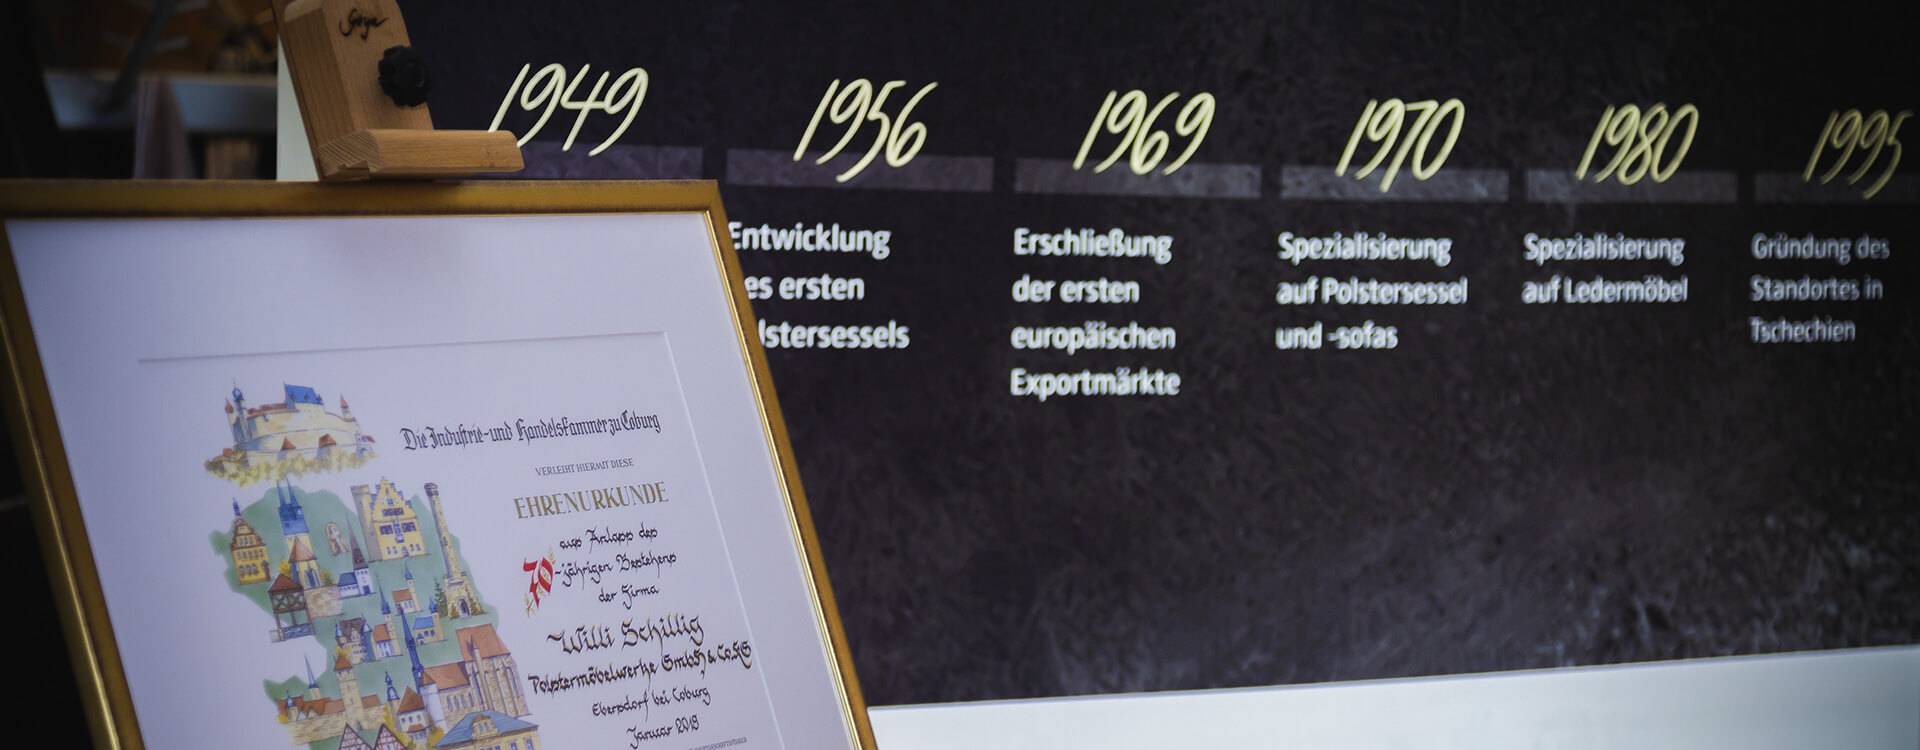 W.SCHILLIG 70 Jahre - Urkunde